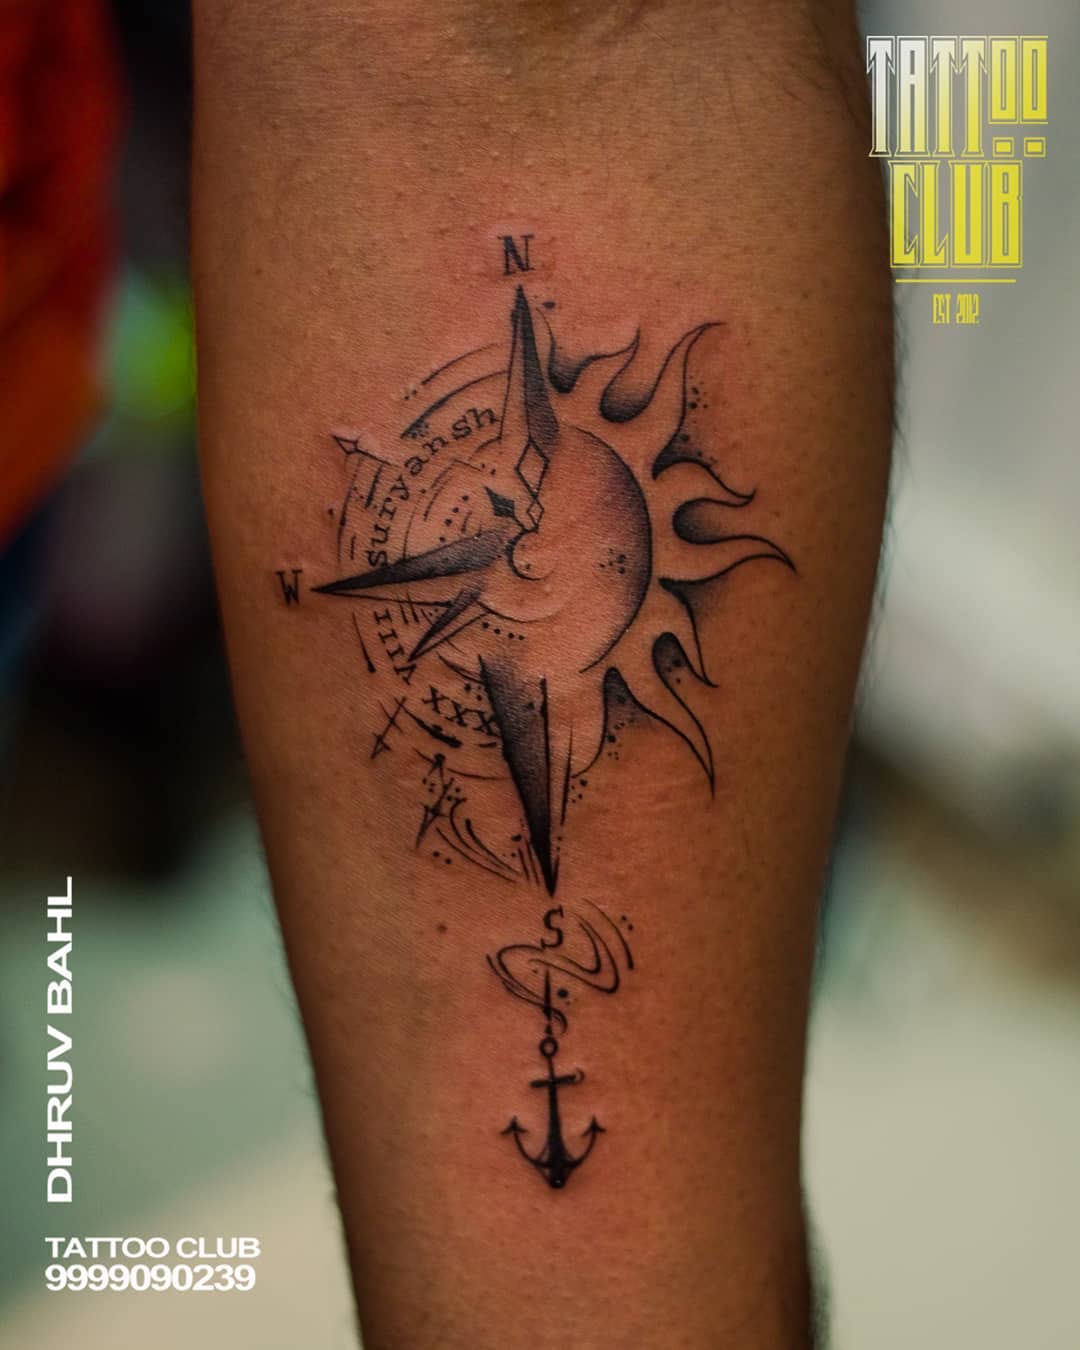 Dhruv tattoos  Facebook